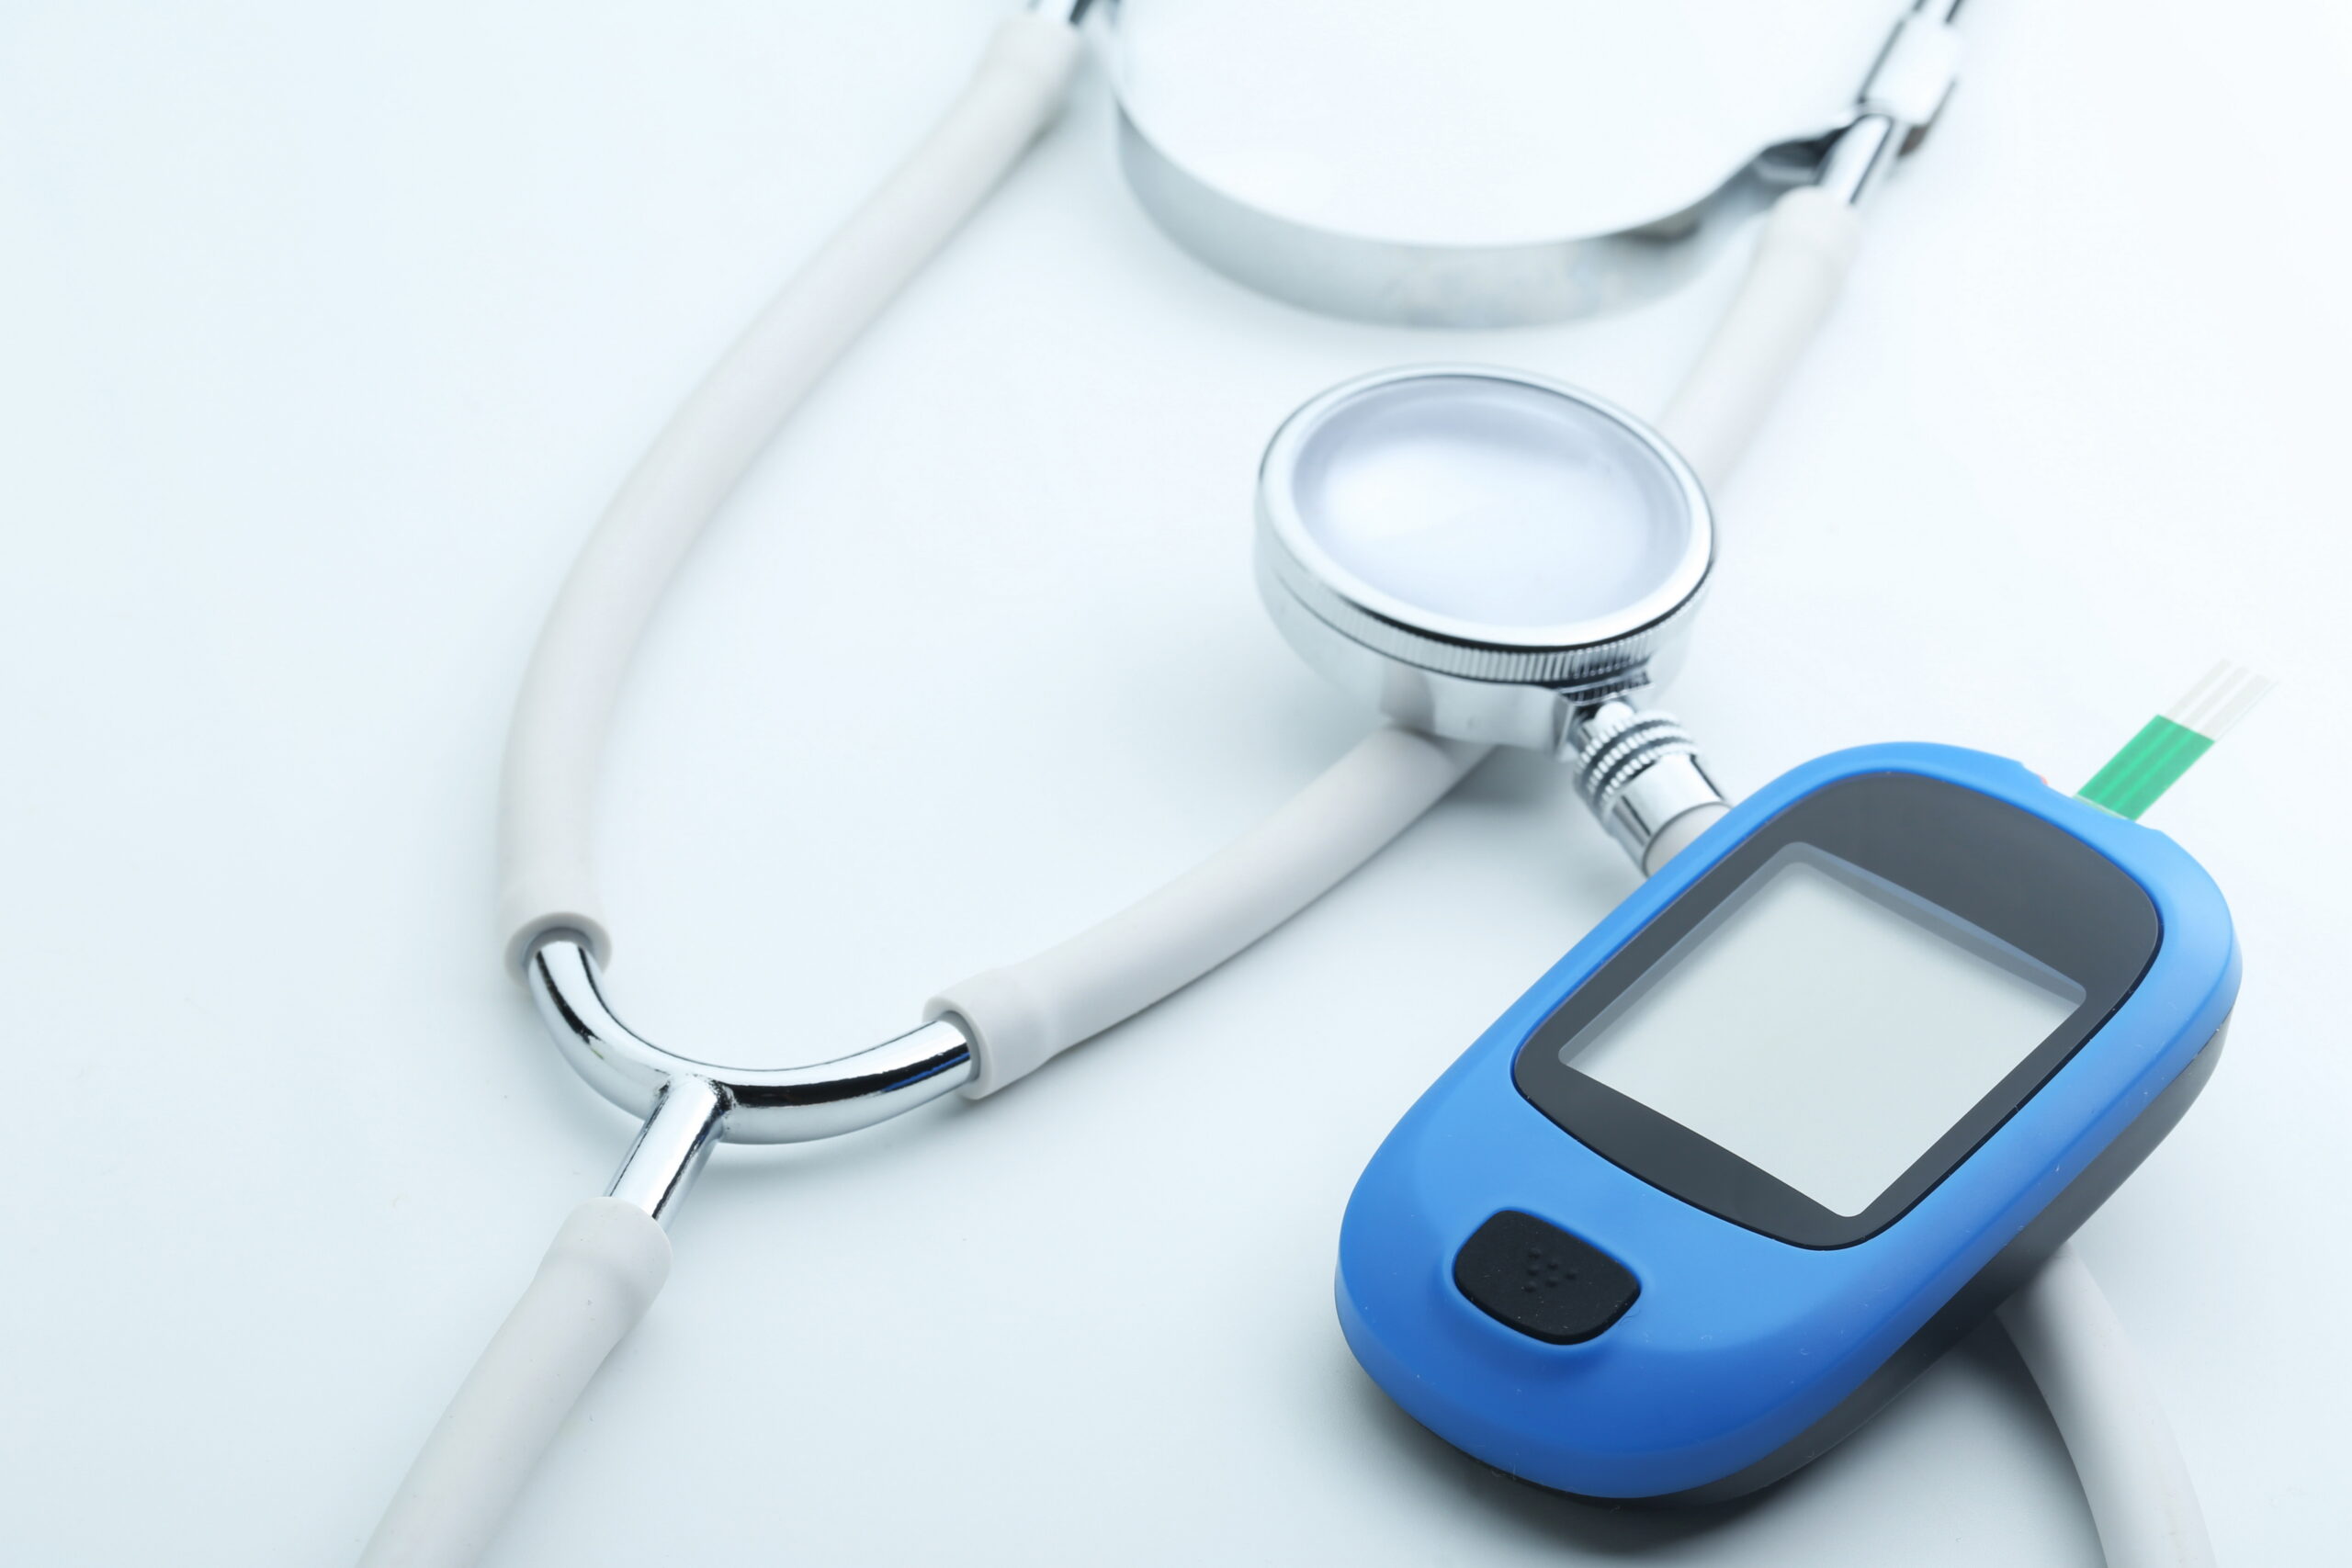 Teste usa smartphone para detectar pré-diabetes de maneira simples -  TecMundo